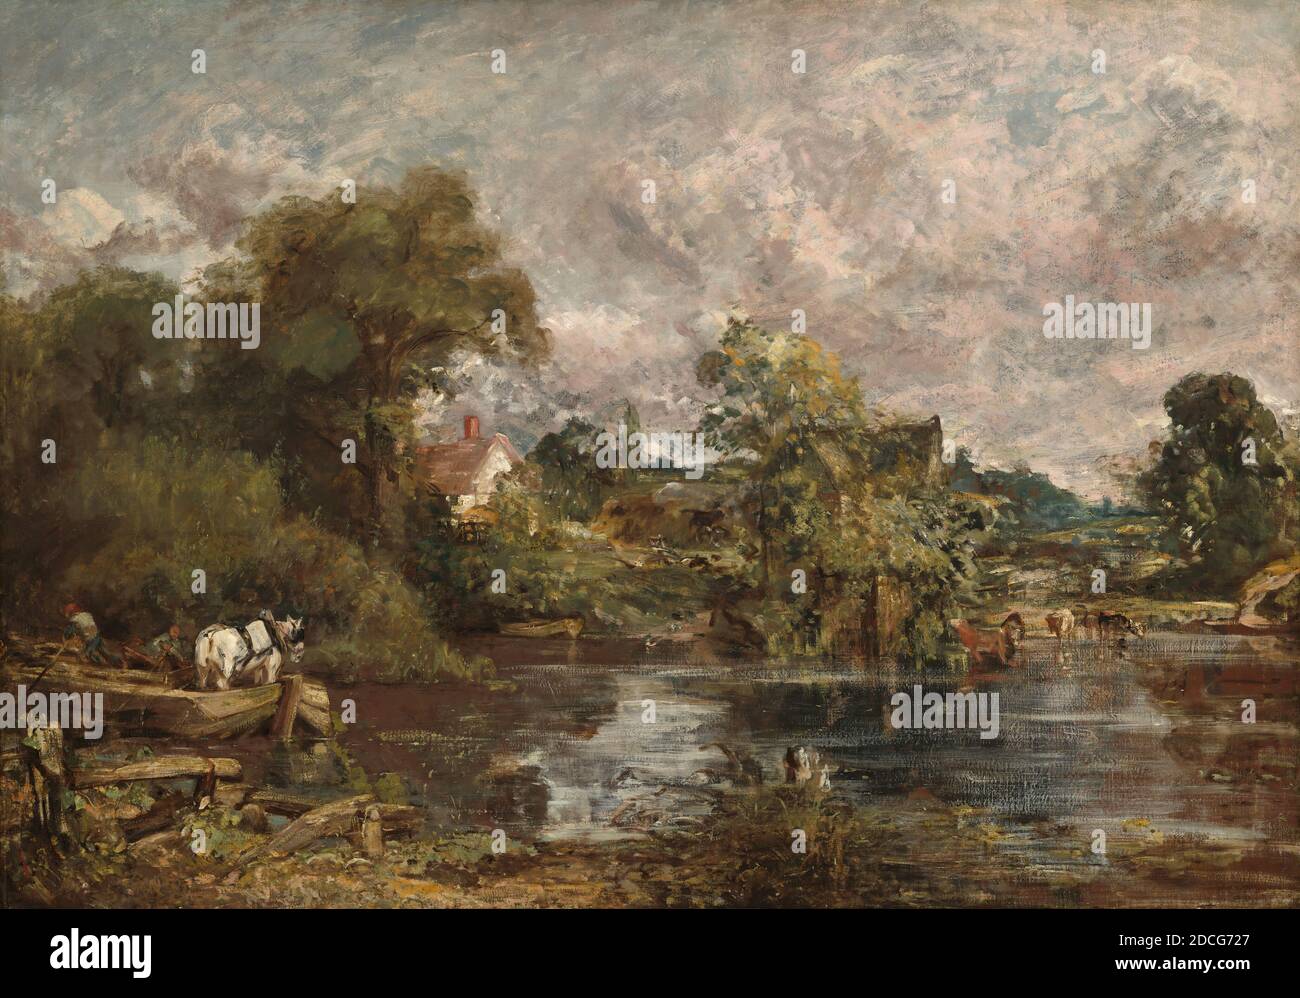 John Constable, (artista), British, 1776 - 1837, The White Horse, 1818-1819, olio su tela, totale: 127 x 183 cm (50 x 72 1/16 in.), incorniciato: 164.5 x 219.7 x 17.2 cm (64 3/4 x 86 1/2 x 6 3/4 in Foto Stock